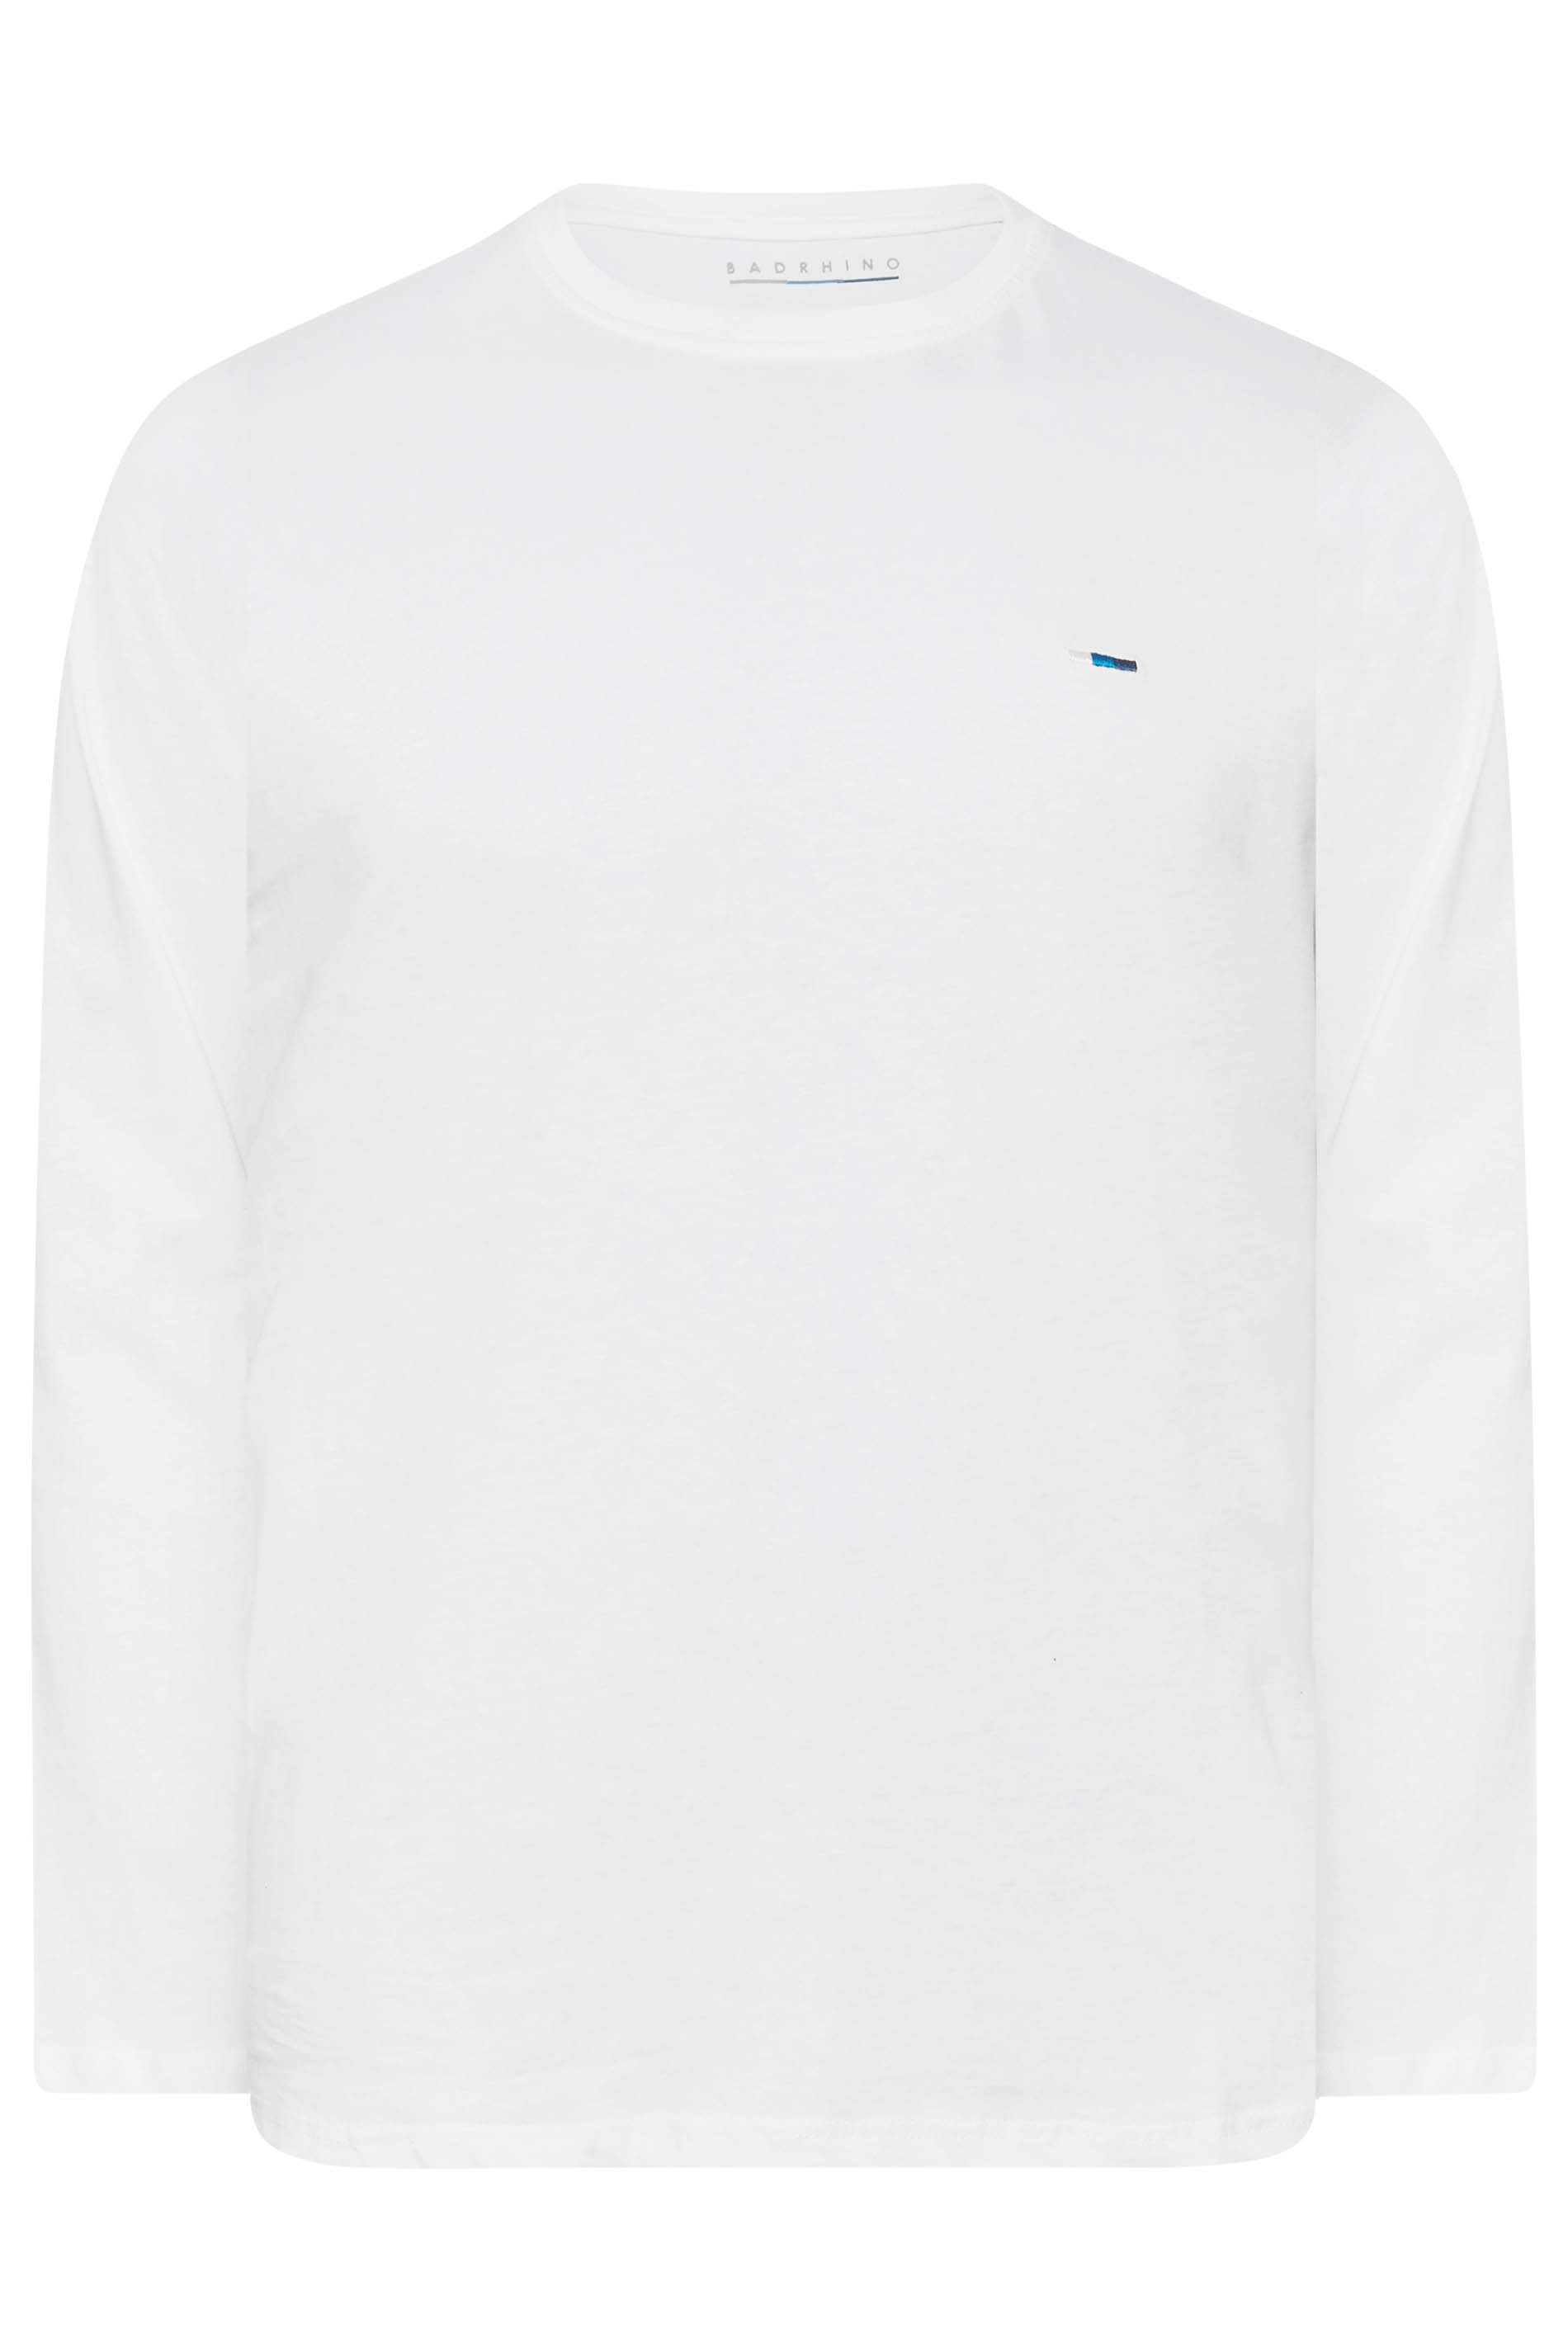 BadRhino White Plain Long Sleeve T-Shirt | BadRhino 3